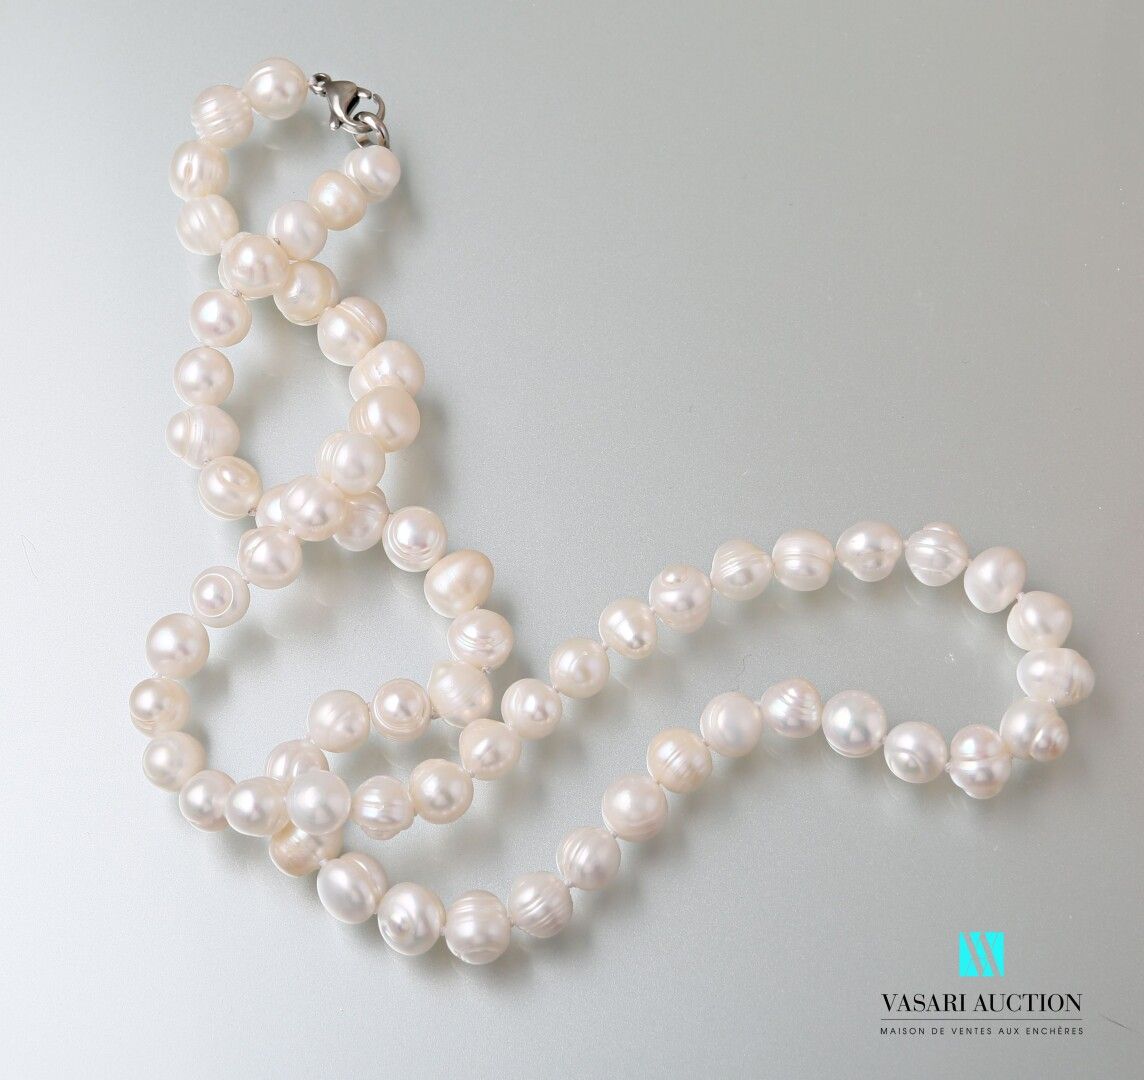 Null Collana con perle d'acqua dolce, chiusura a moschettone

Lunghezza: 57,5 cm